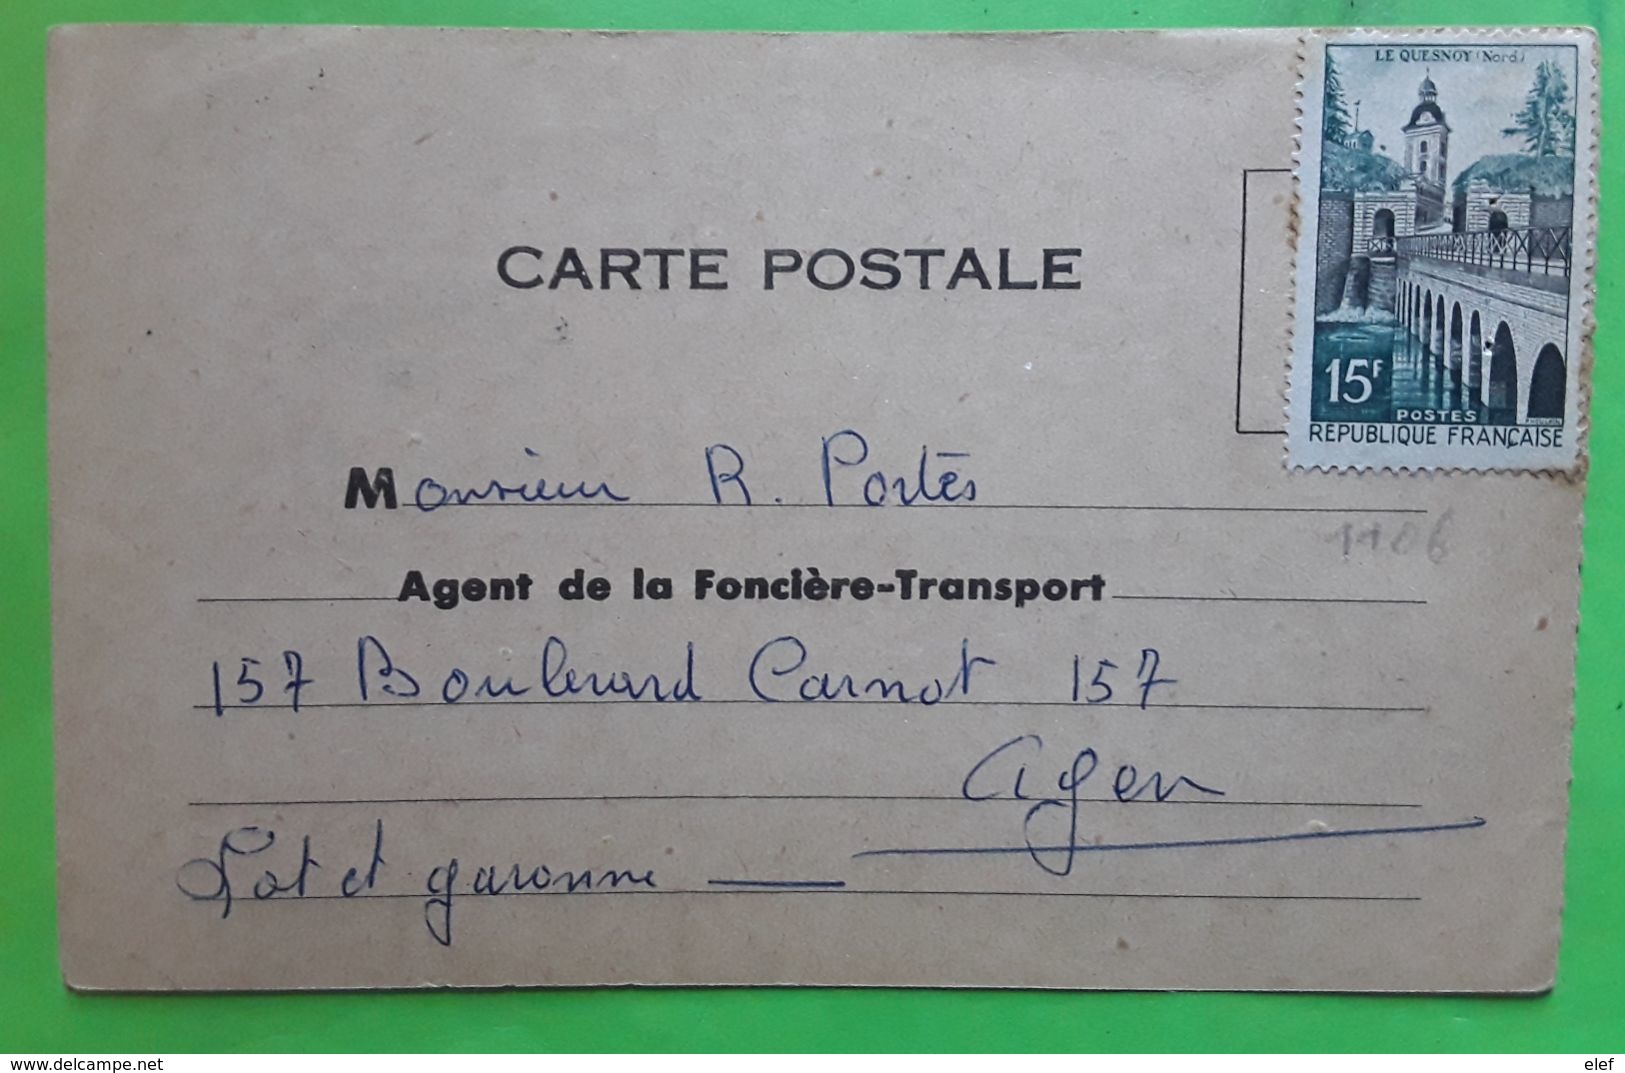 Yvert 1106,15 F LE QUESNOY Neuf Carte Postale Bon De Carnet Assurances LA FONCIERE,Cachet PUYMIROL,Lot Et Garonne 1958 - 1921-1960: Modern Period